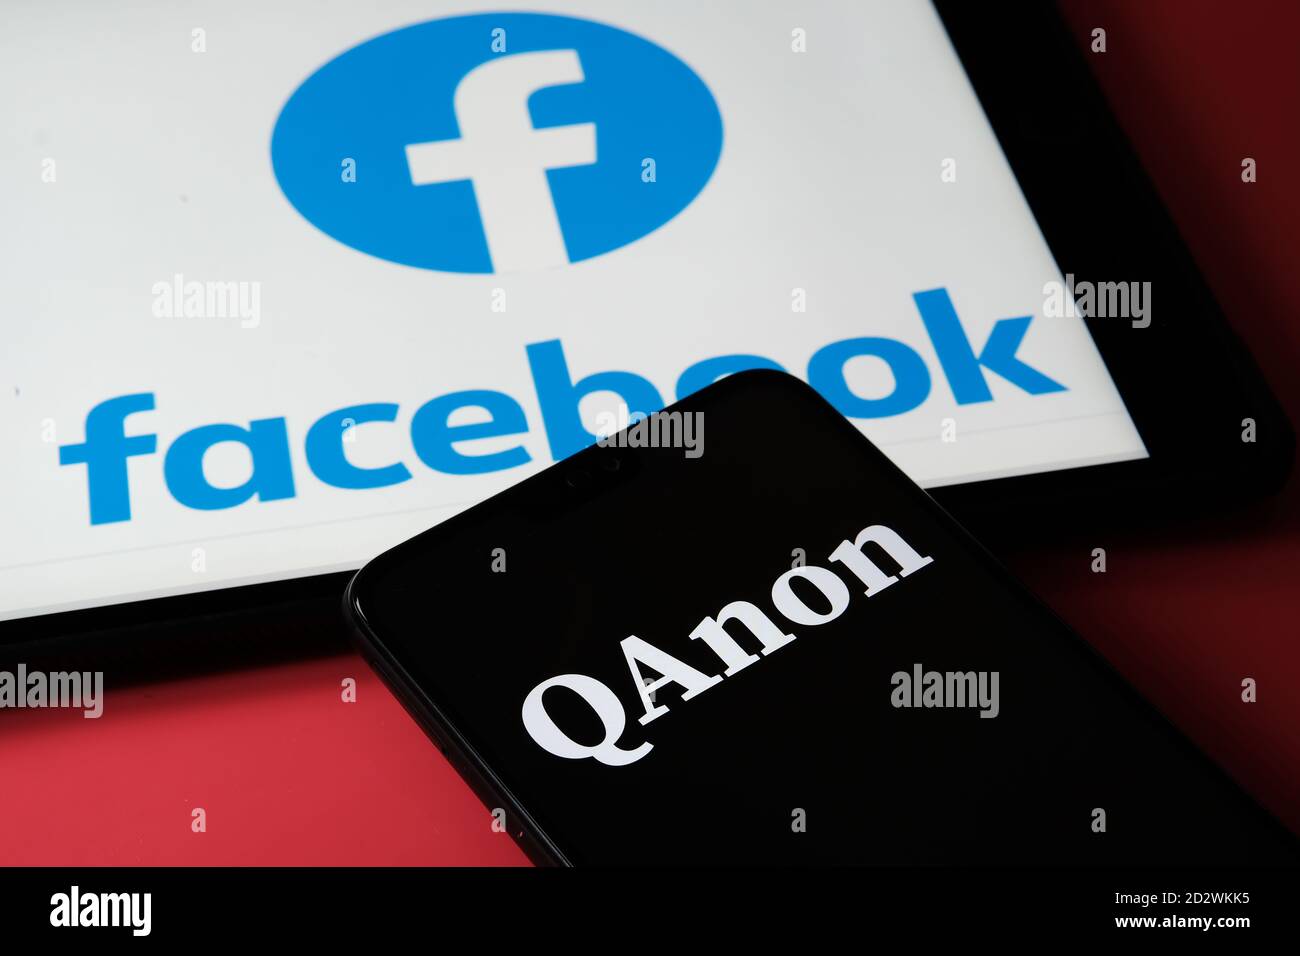 QAnon im Vergleich ZU FACEBOOK. QAnon-Unternehmenslogo auf dem Smartphone, das auf dem Tablet mit Facebook-Logos darauf platziert ist. Konzept für das Verbot von QAnon auf SoC Stockfoto